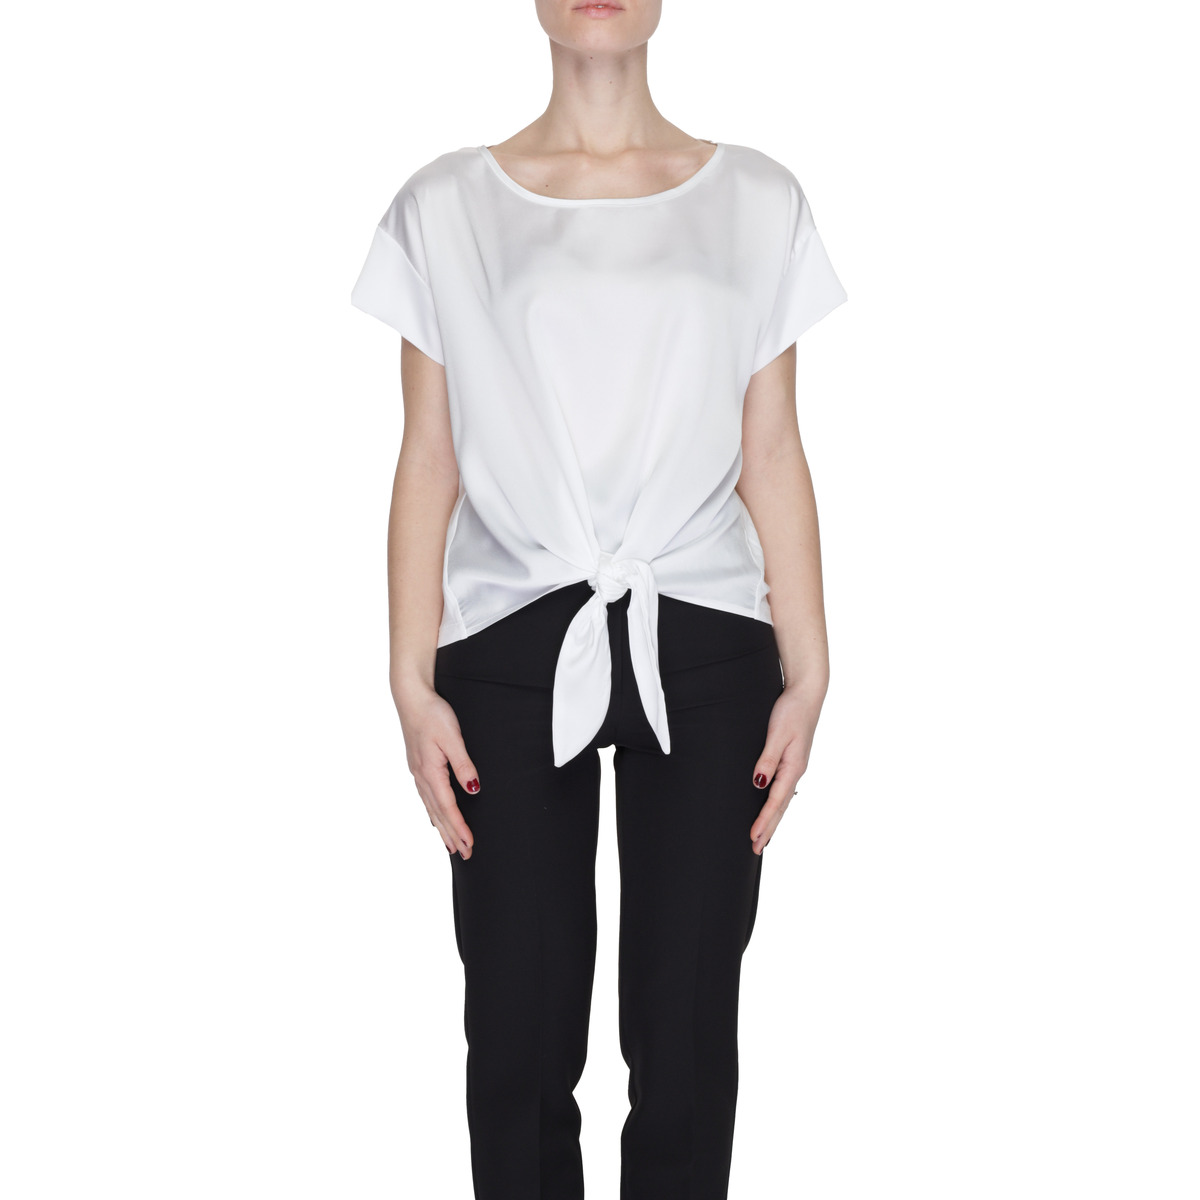 Vêtements Femme Connectez-vous pour ajouter un avis Sandro Ferrone S7XBDMAME Blanc